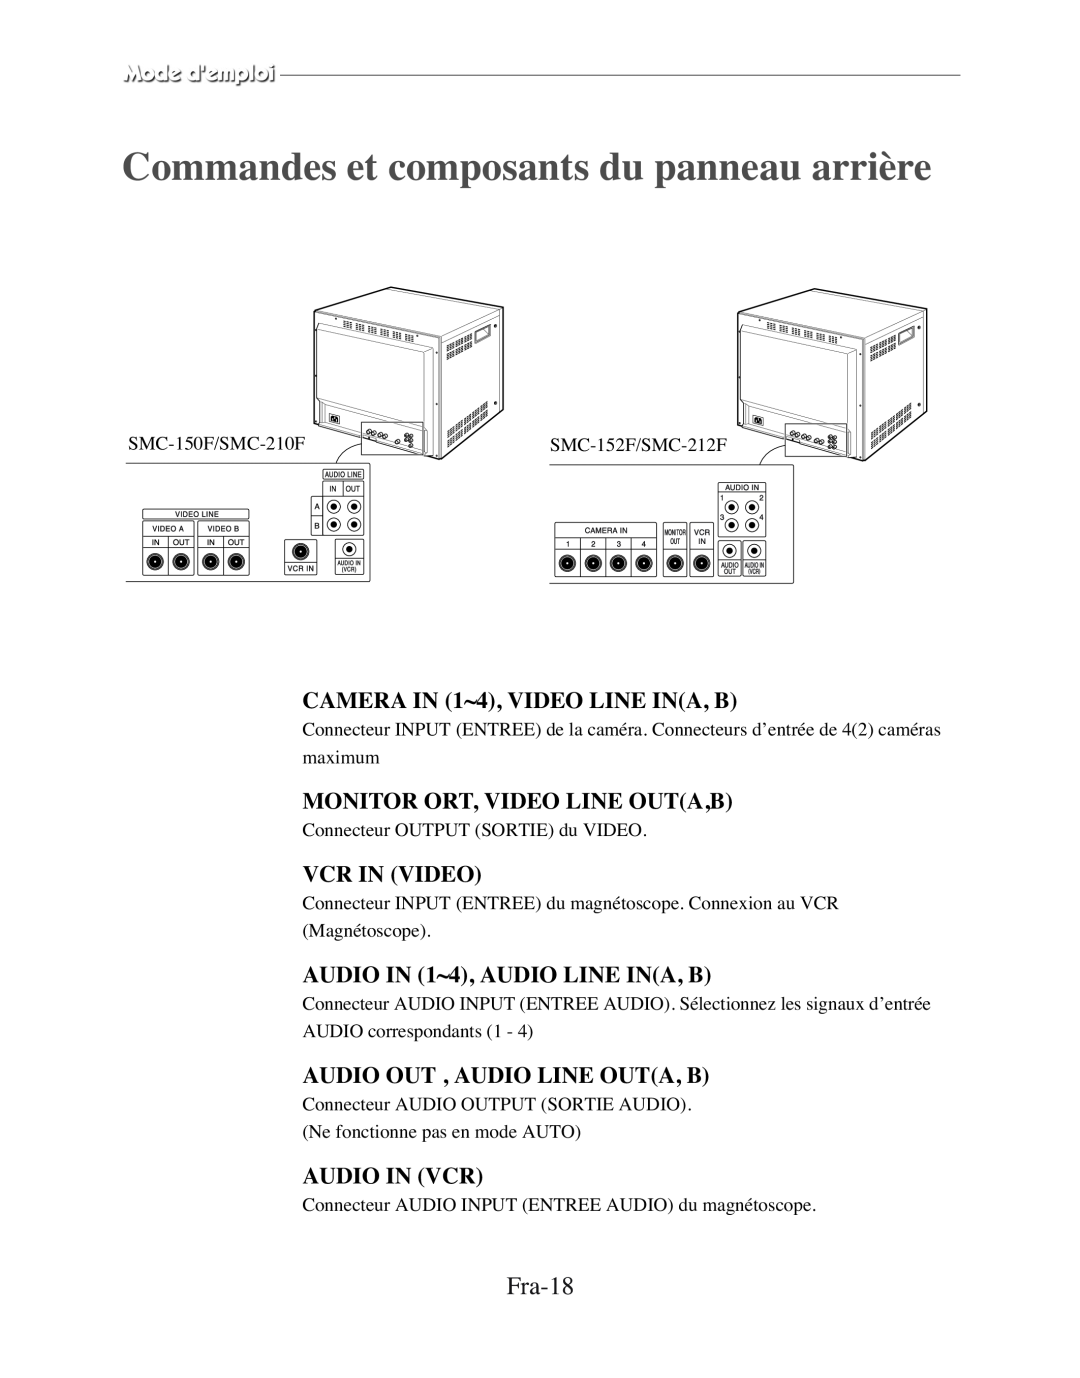 Samsung SMC-210FP manual Commandes et composants du panneau arrière, Fra-18, Monitor Ort, Video Line Outa,B, Vcr In Video 